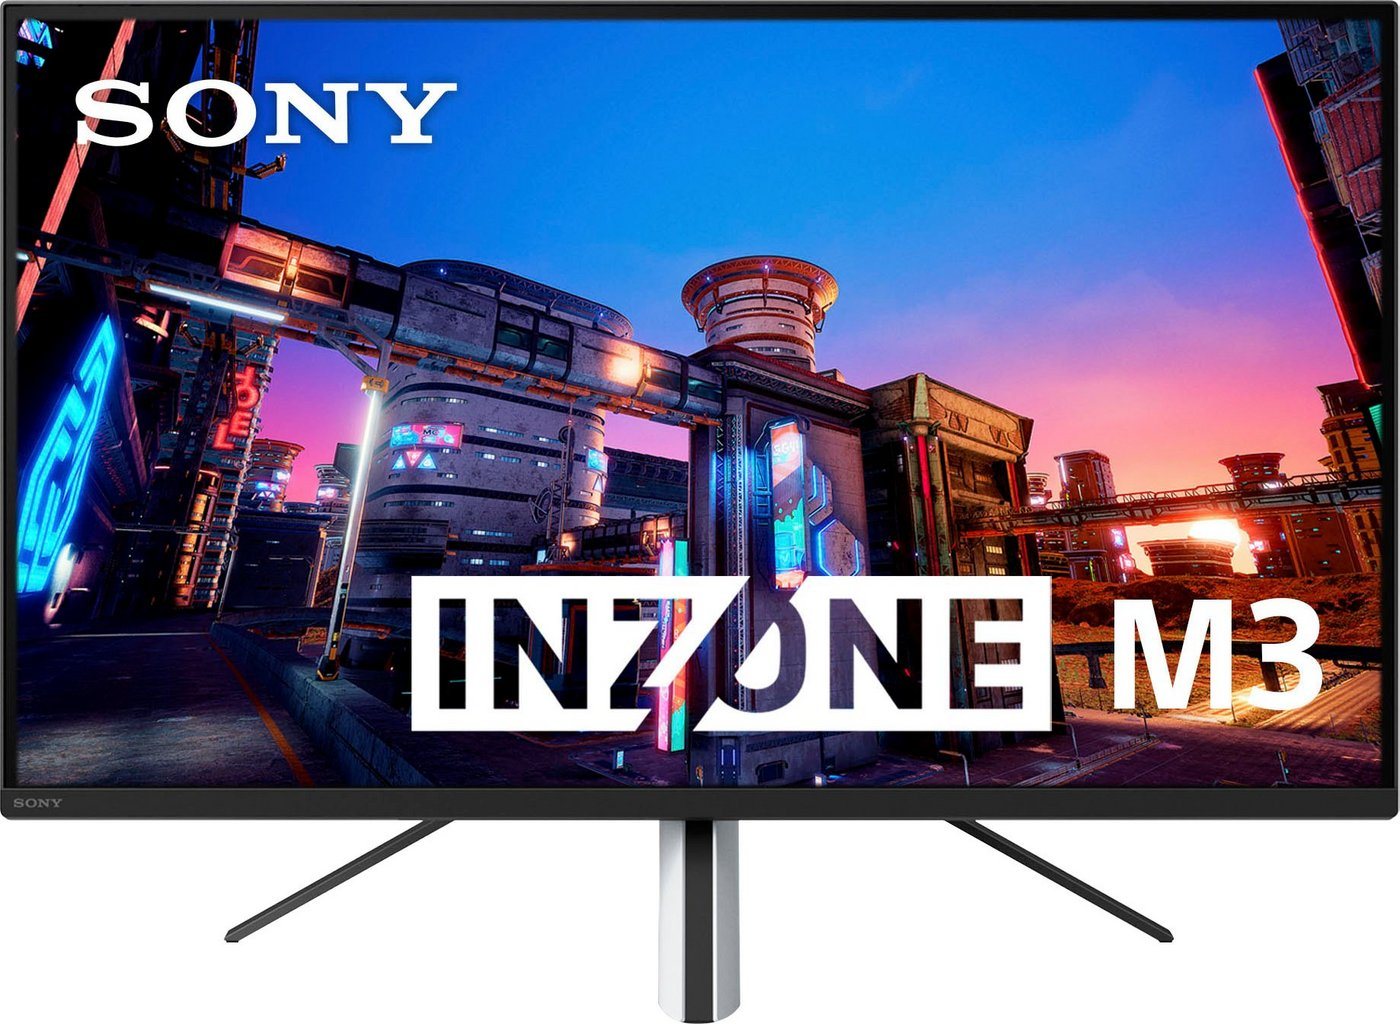 Sony INZONE M3 Gaming-Monitor (69 cm/27 , 1920 x 1080 px, Full HD, 1 ms Reaktionszeit, 240 Hz, IPS-LCD, Perfekt für PlayStation®5)" von Sony